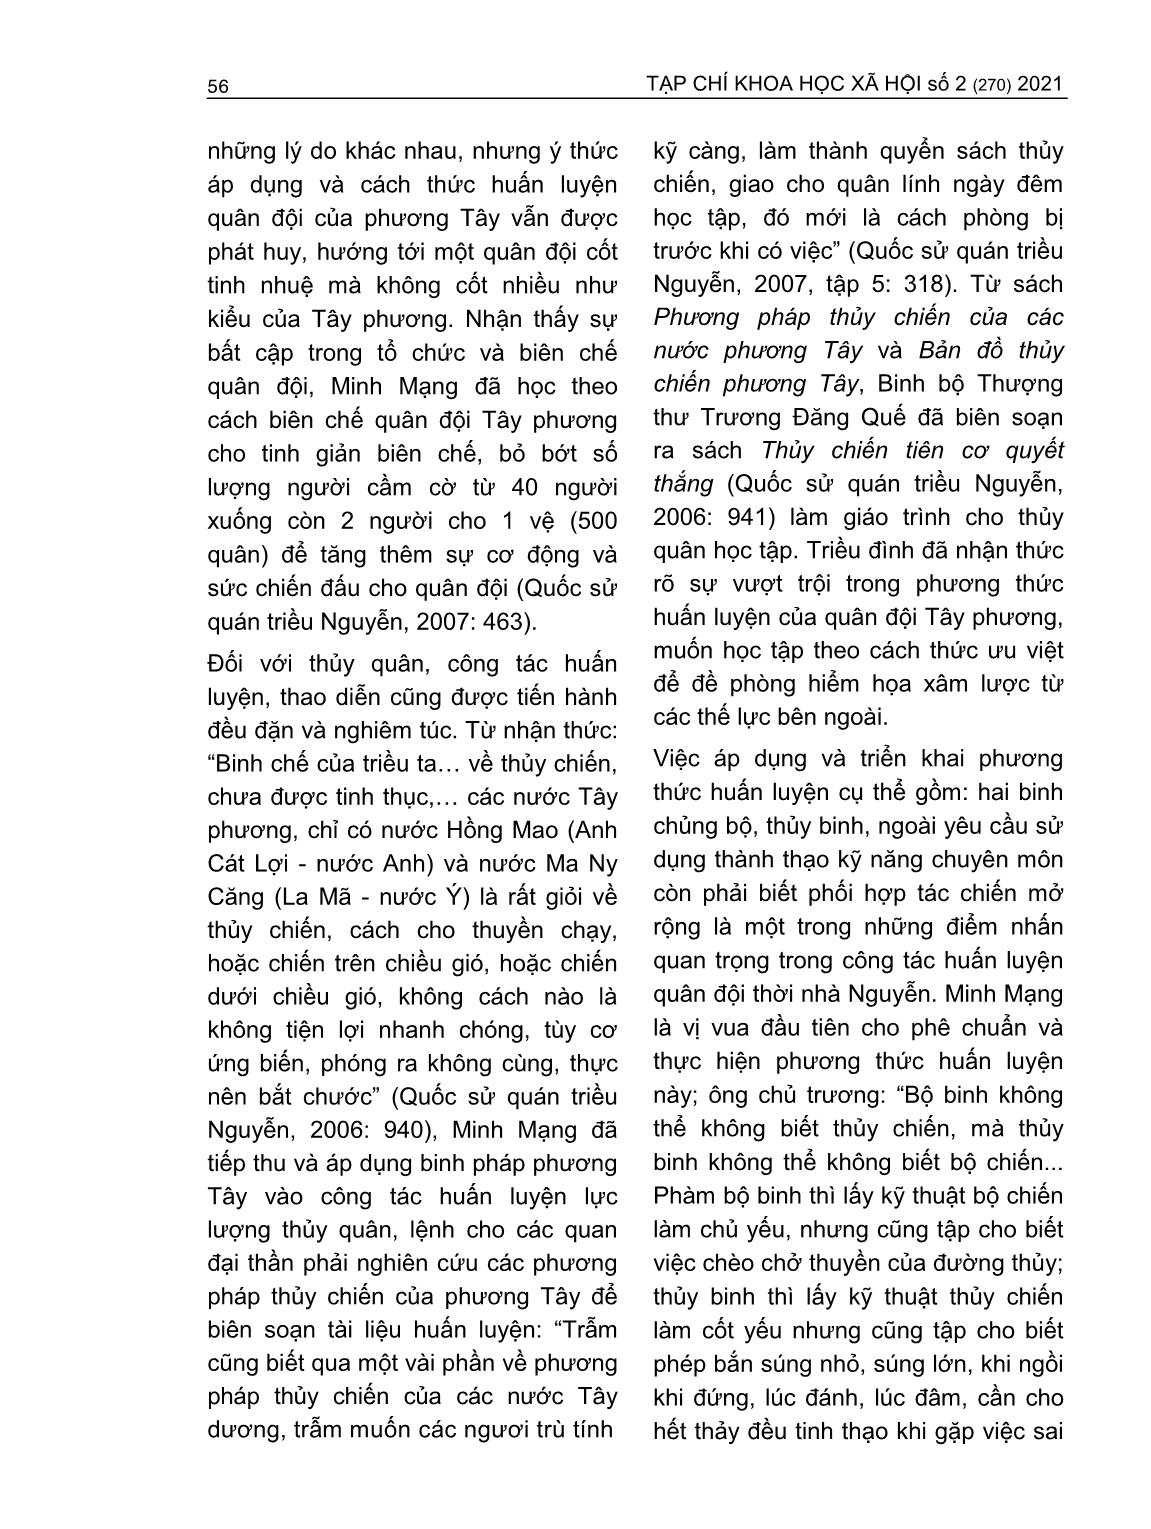 Việc tiếp thu, áp dụng kỹ thuật quân sự phương Tây của triều Nguyễn (1802-1858) trang 7